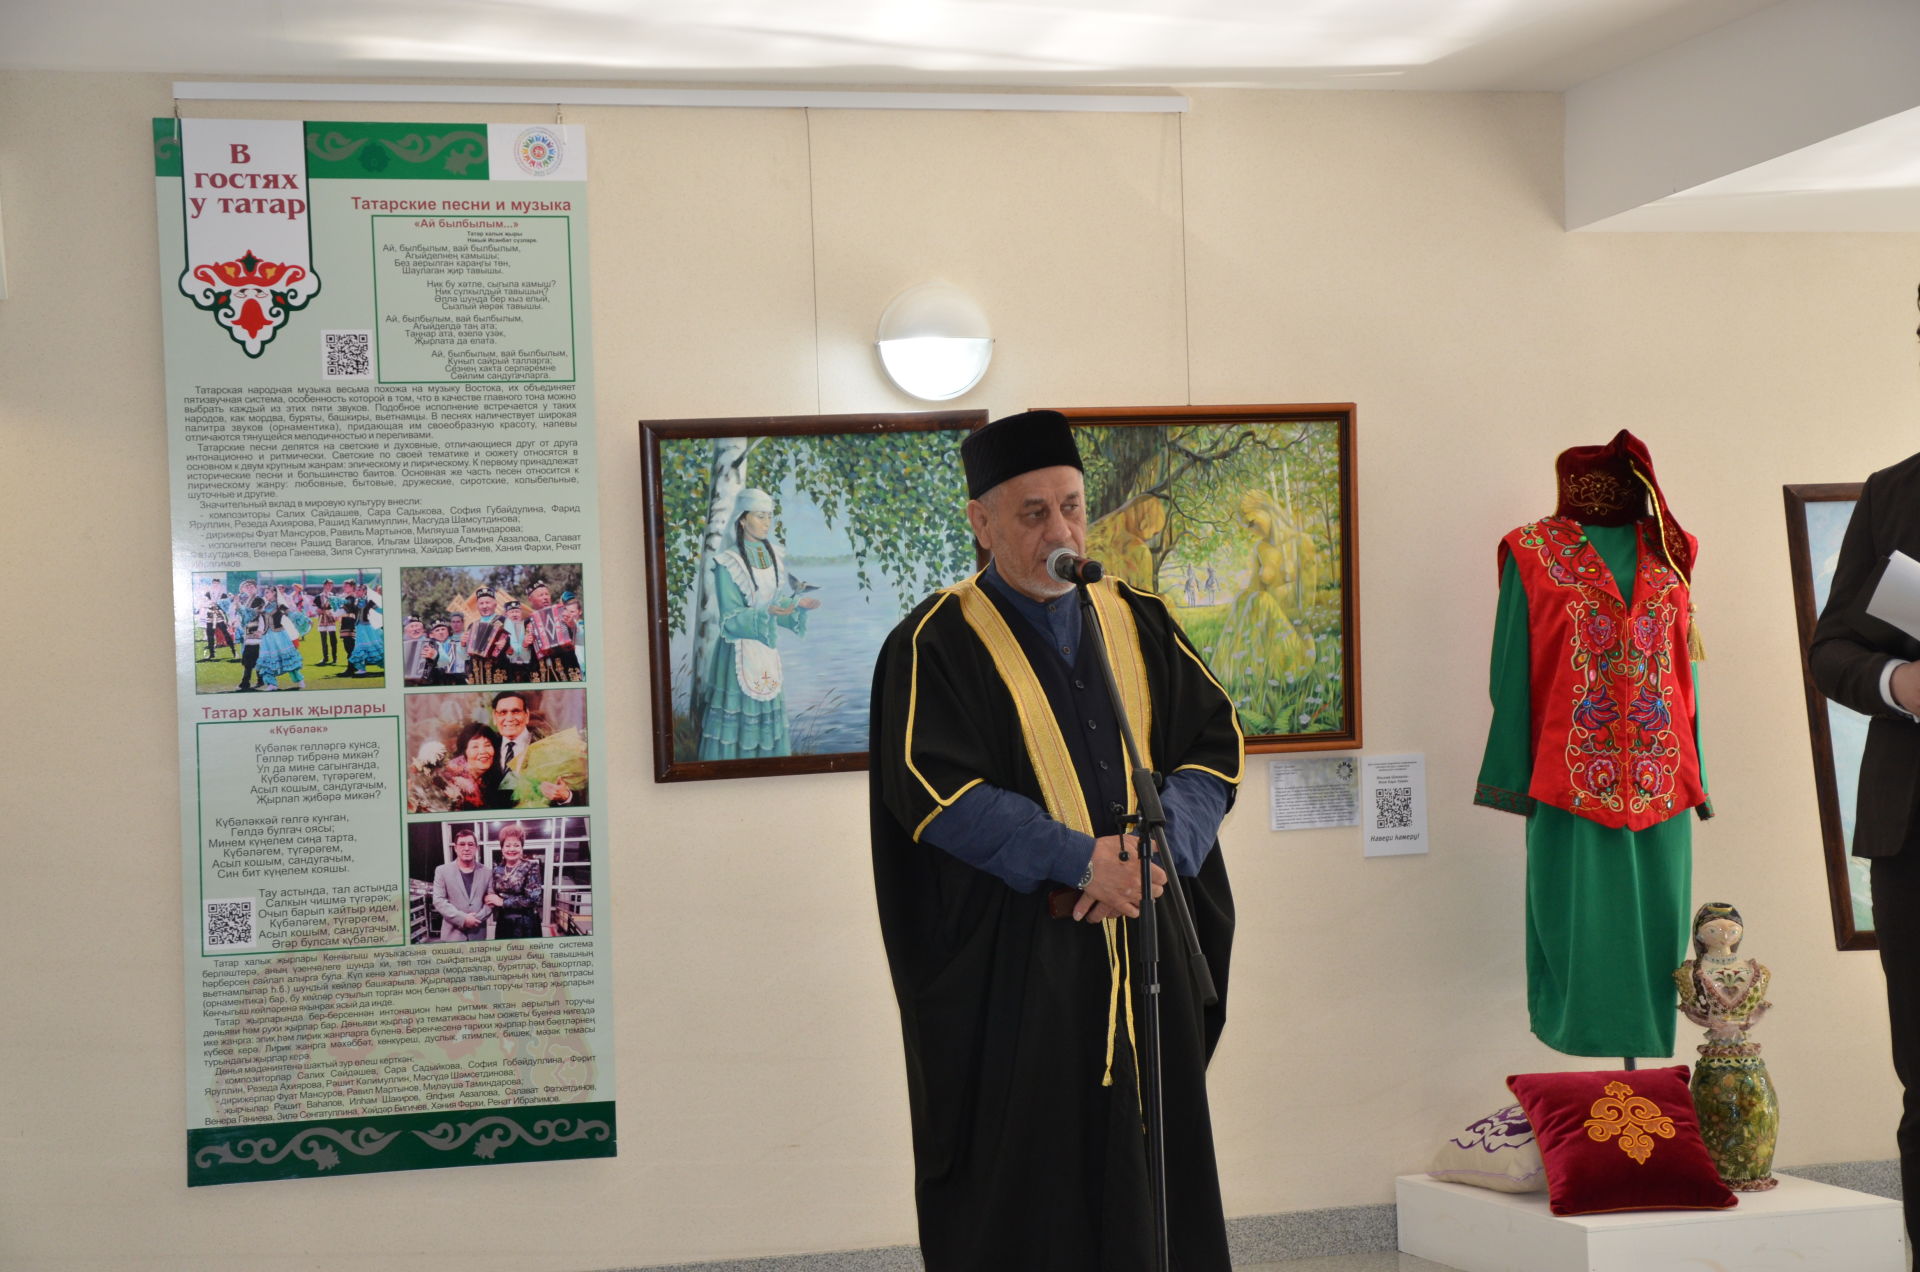 Елабужская выставка «В гостях у татар» открылась в Тюмени